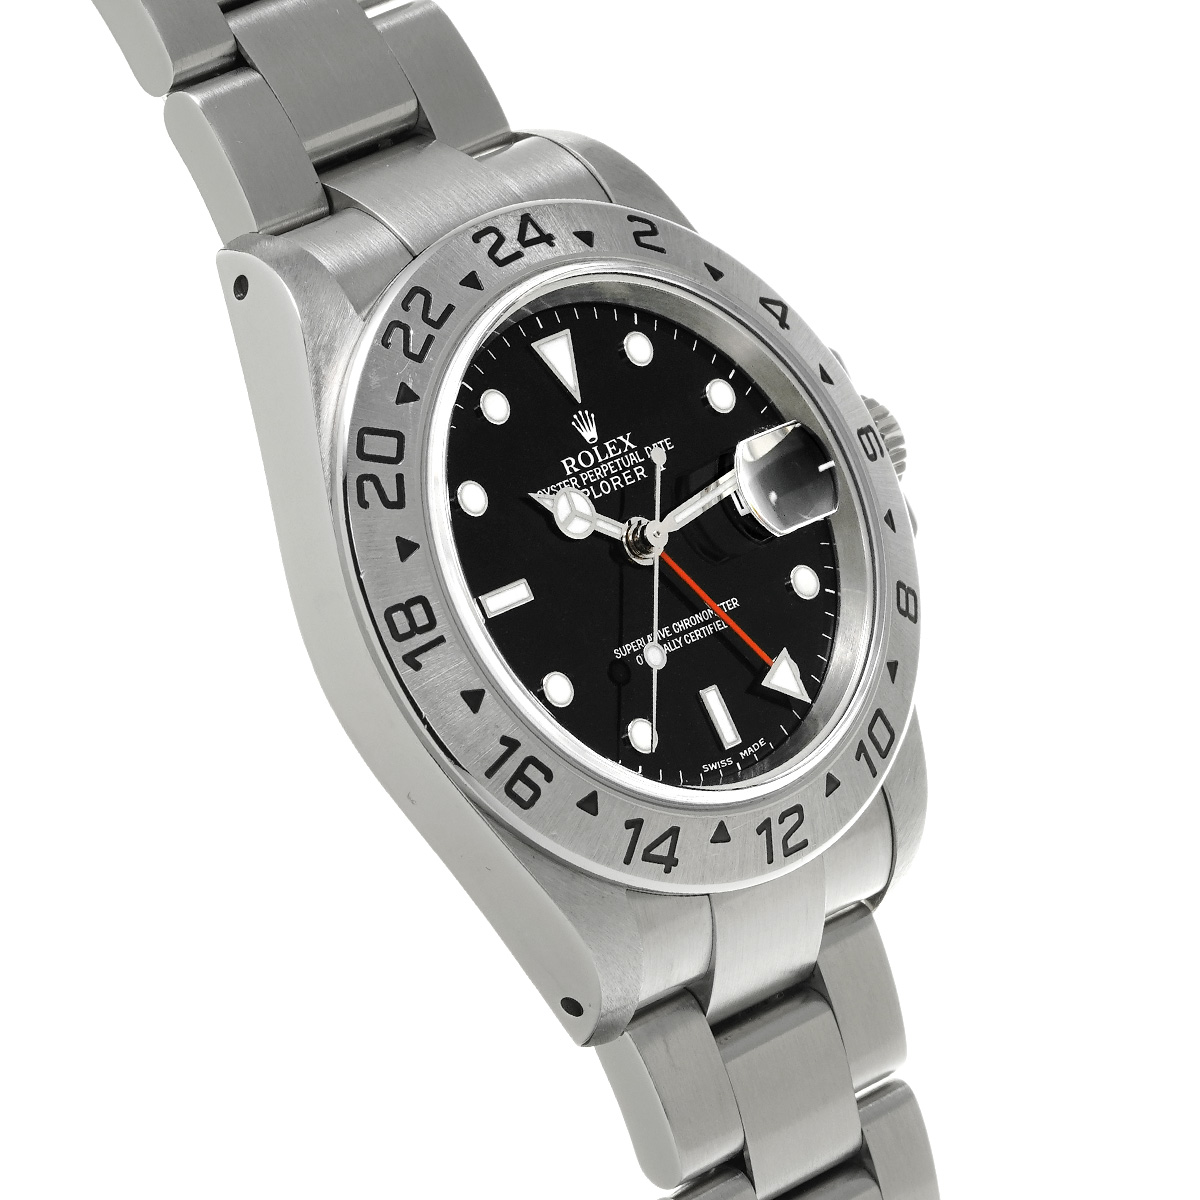 エクスプローラー2 Ref.16570 品 メンズ 腕時計